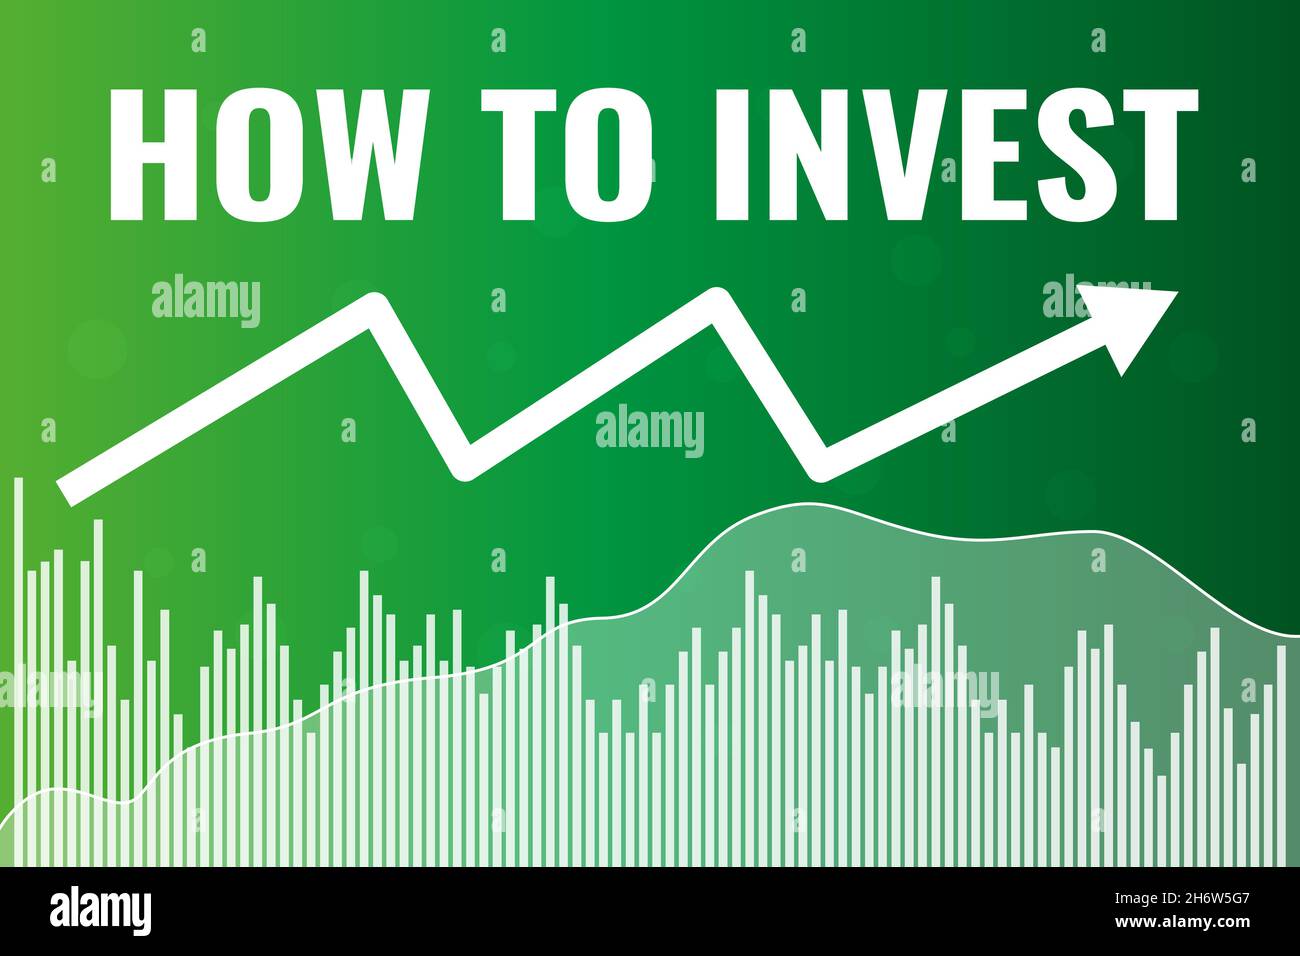 Mots Comment investir sur fond de finance verte avec gradient.Investir sur le marché boursier et financier Illustration de Vecteur